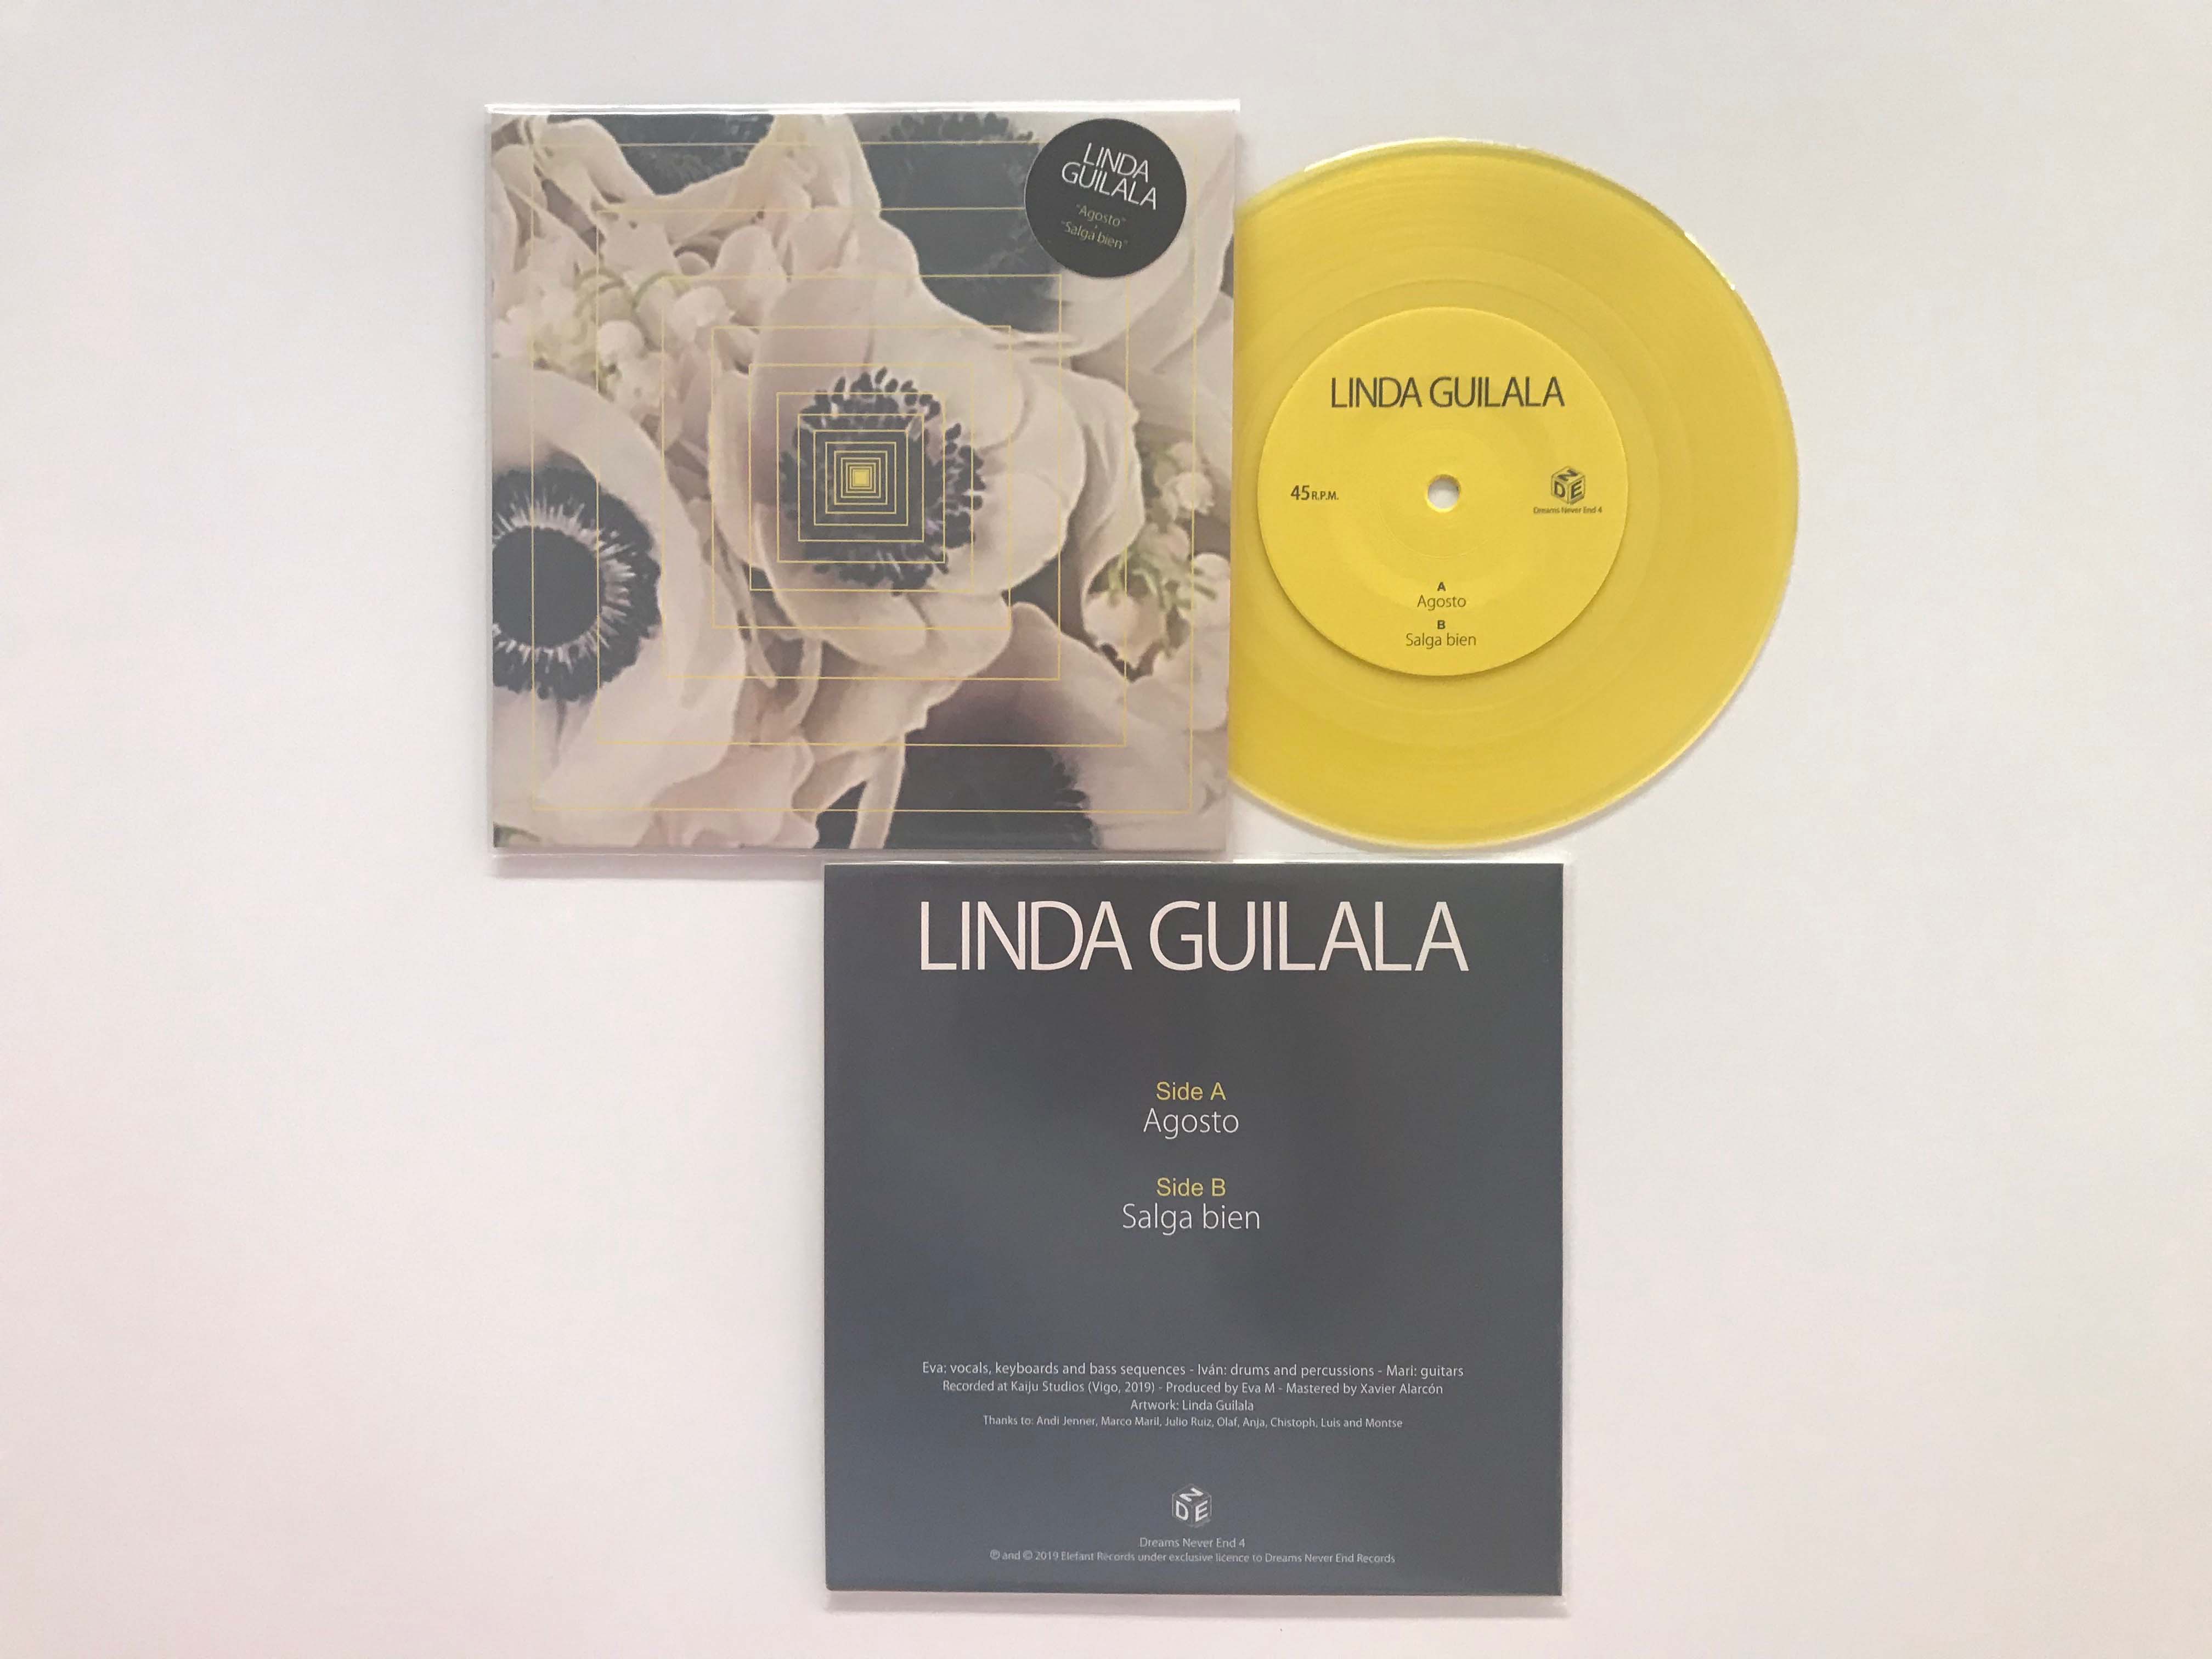 Linda Guilala "Agosto" Single 7"